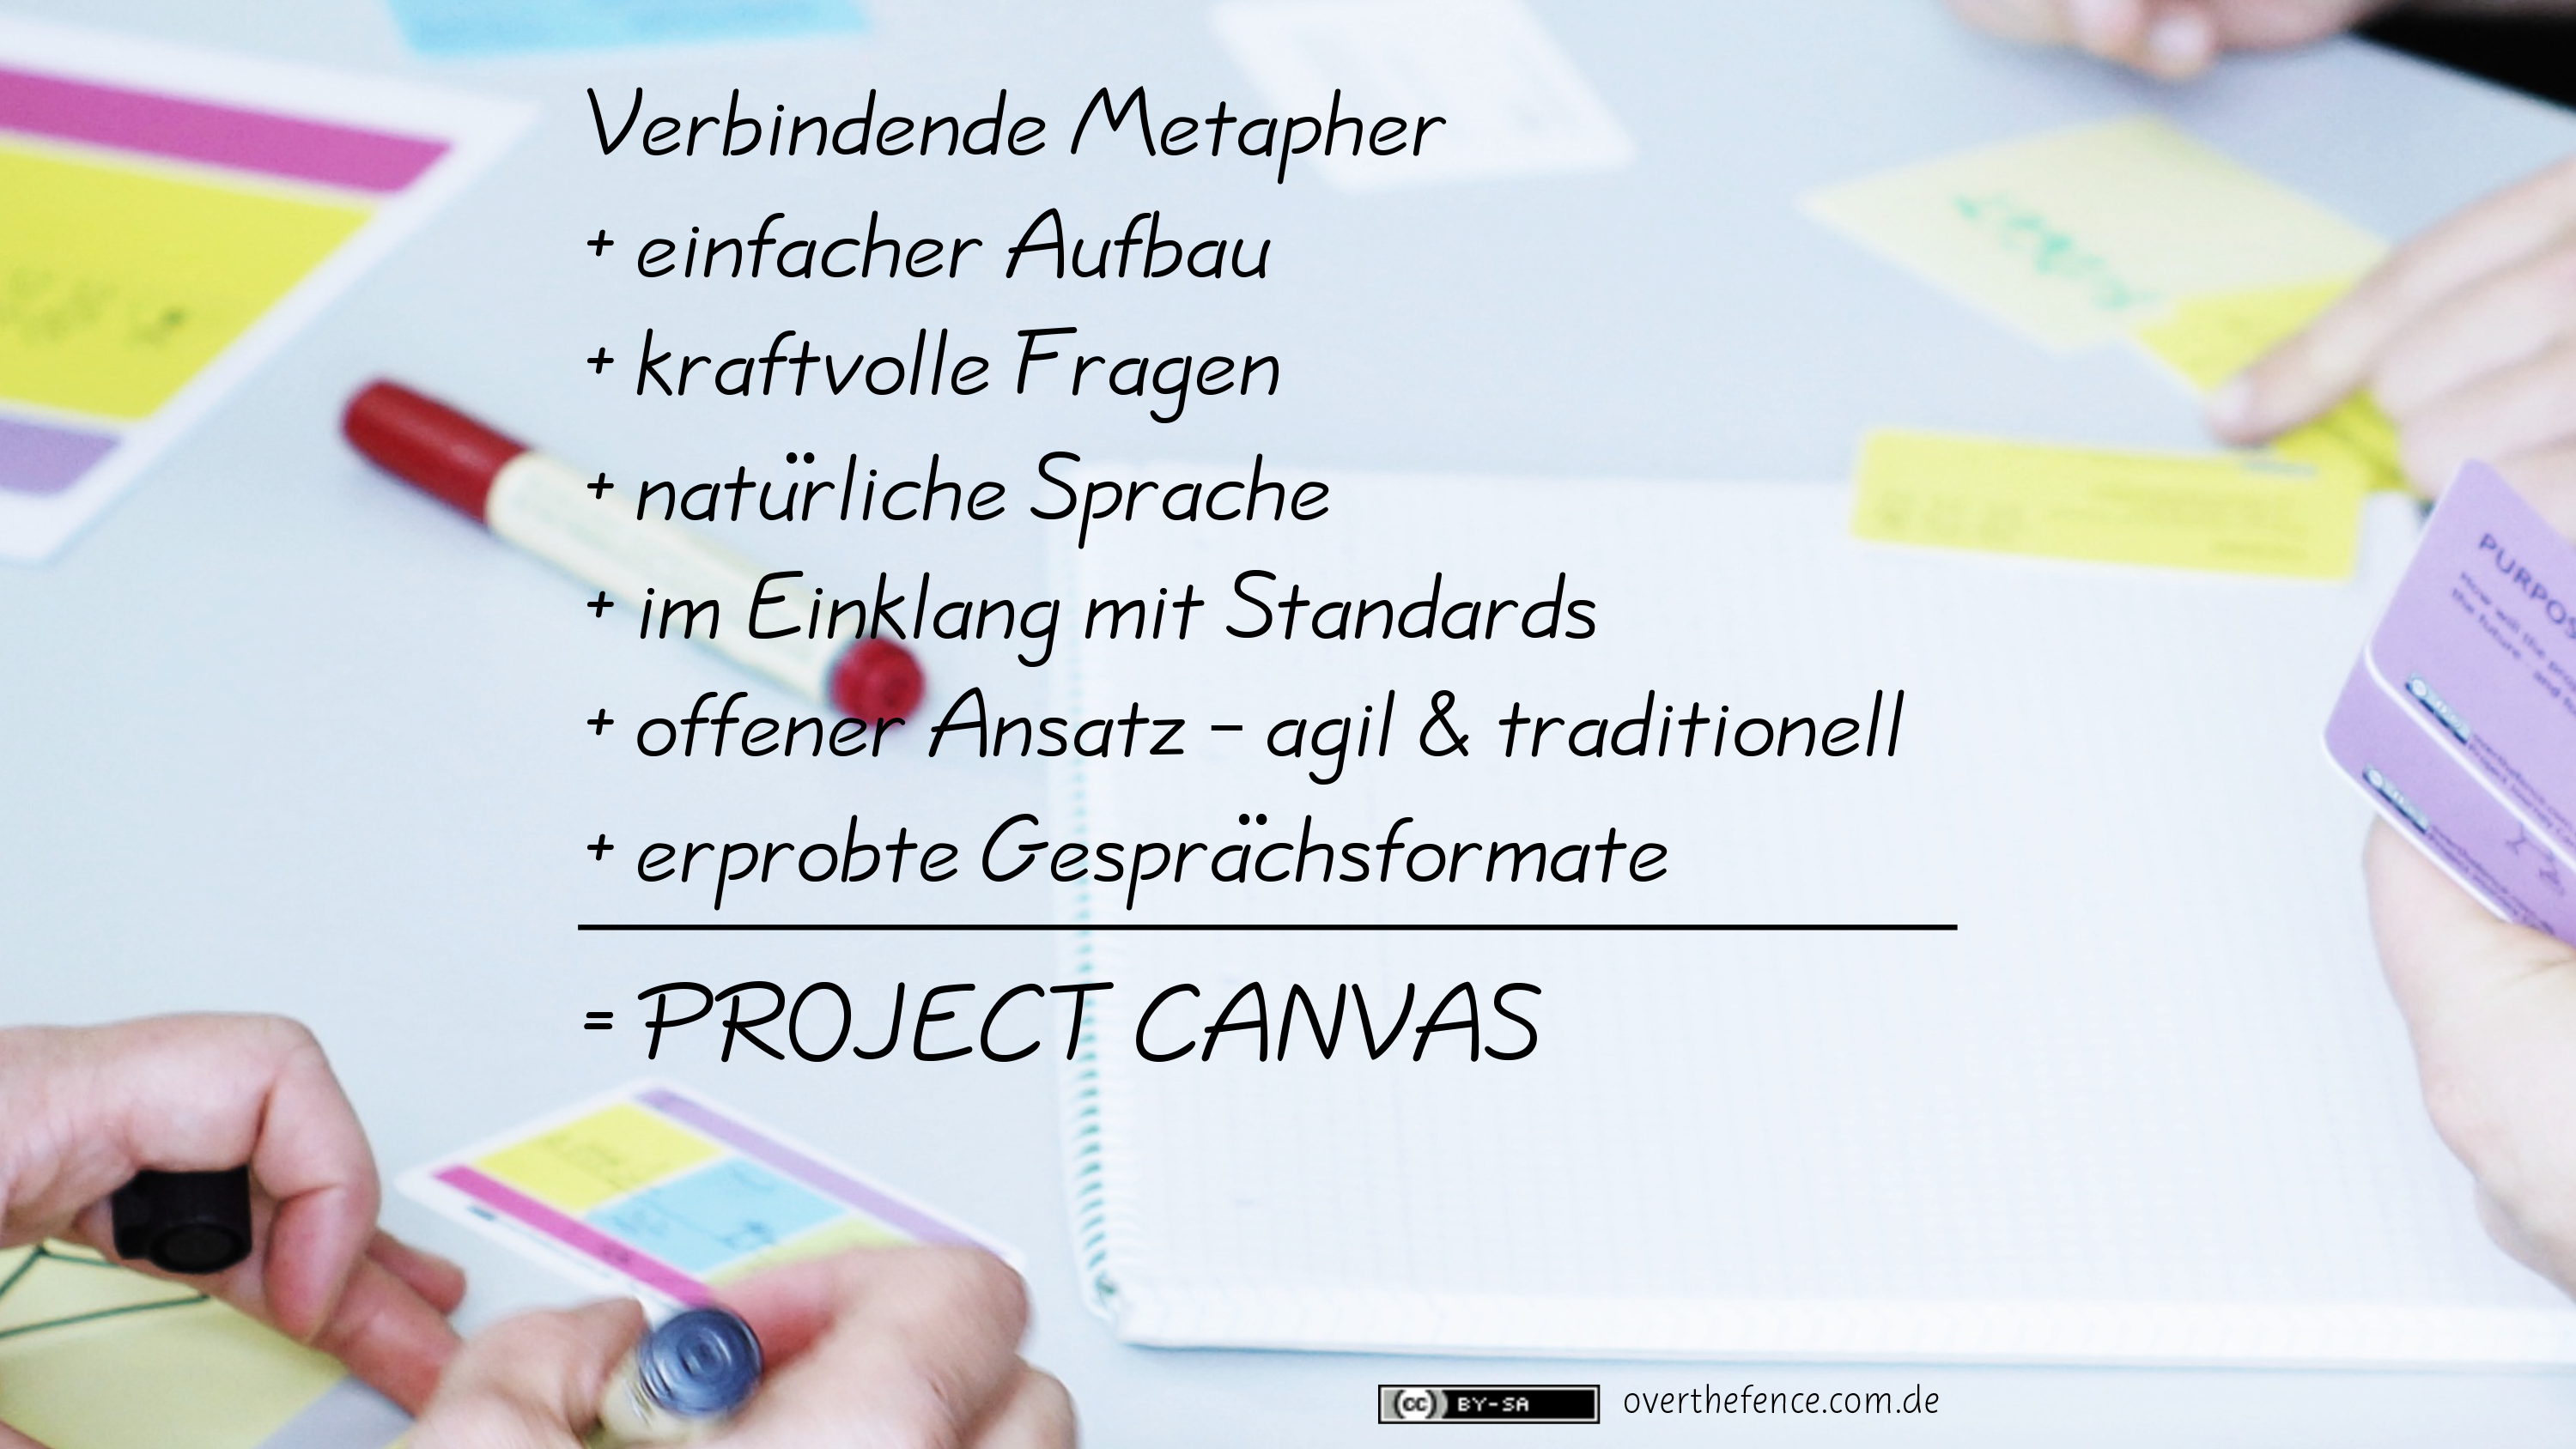 Der Project Canvas ist Projektionsfläche für Gedanken